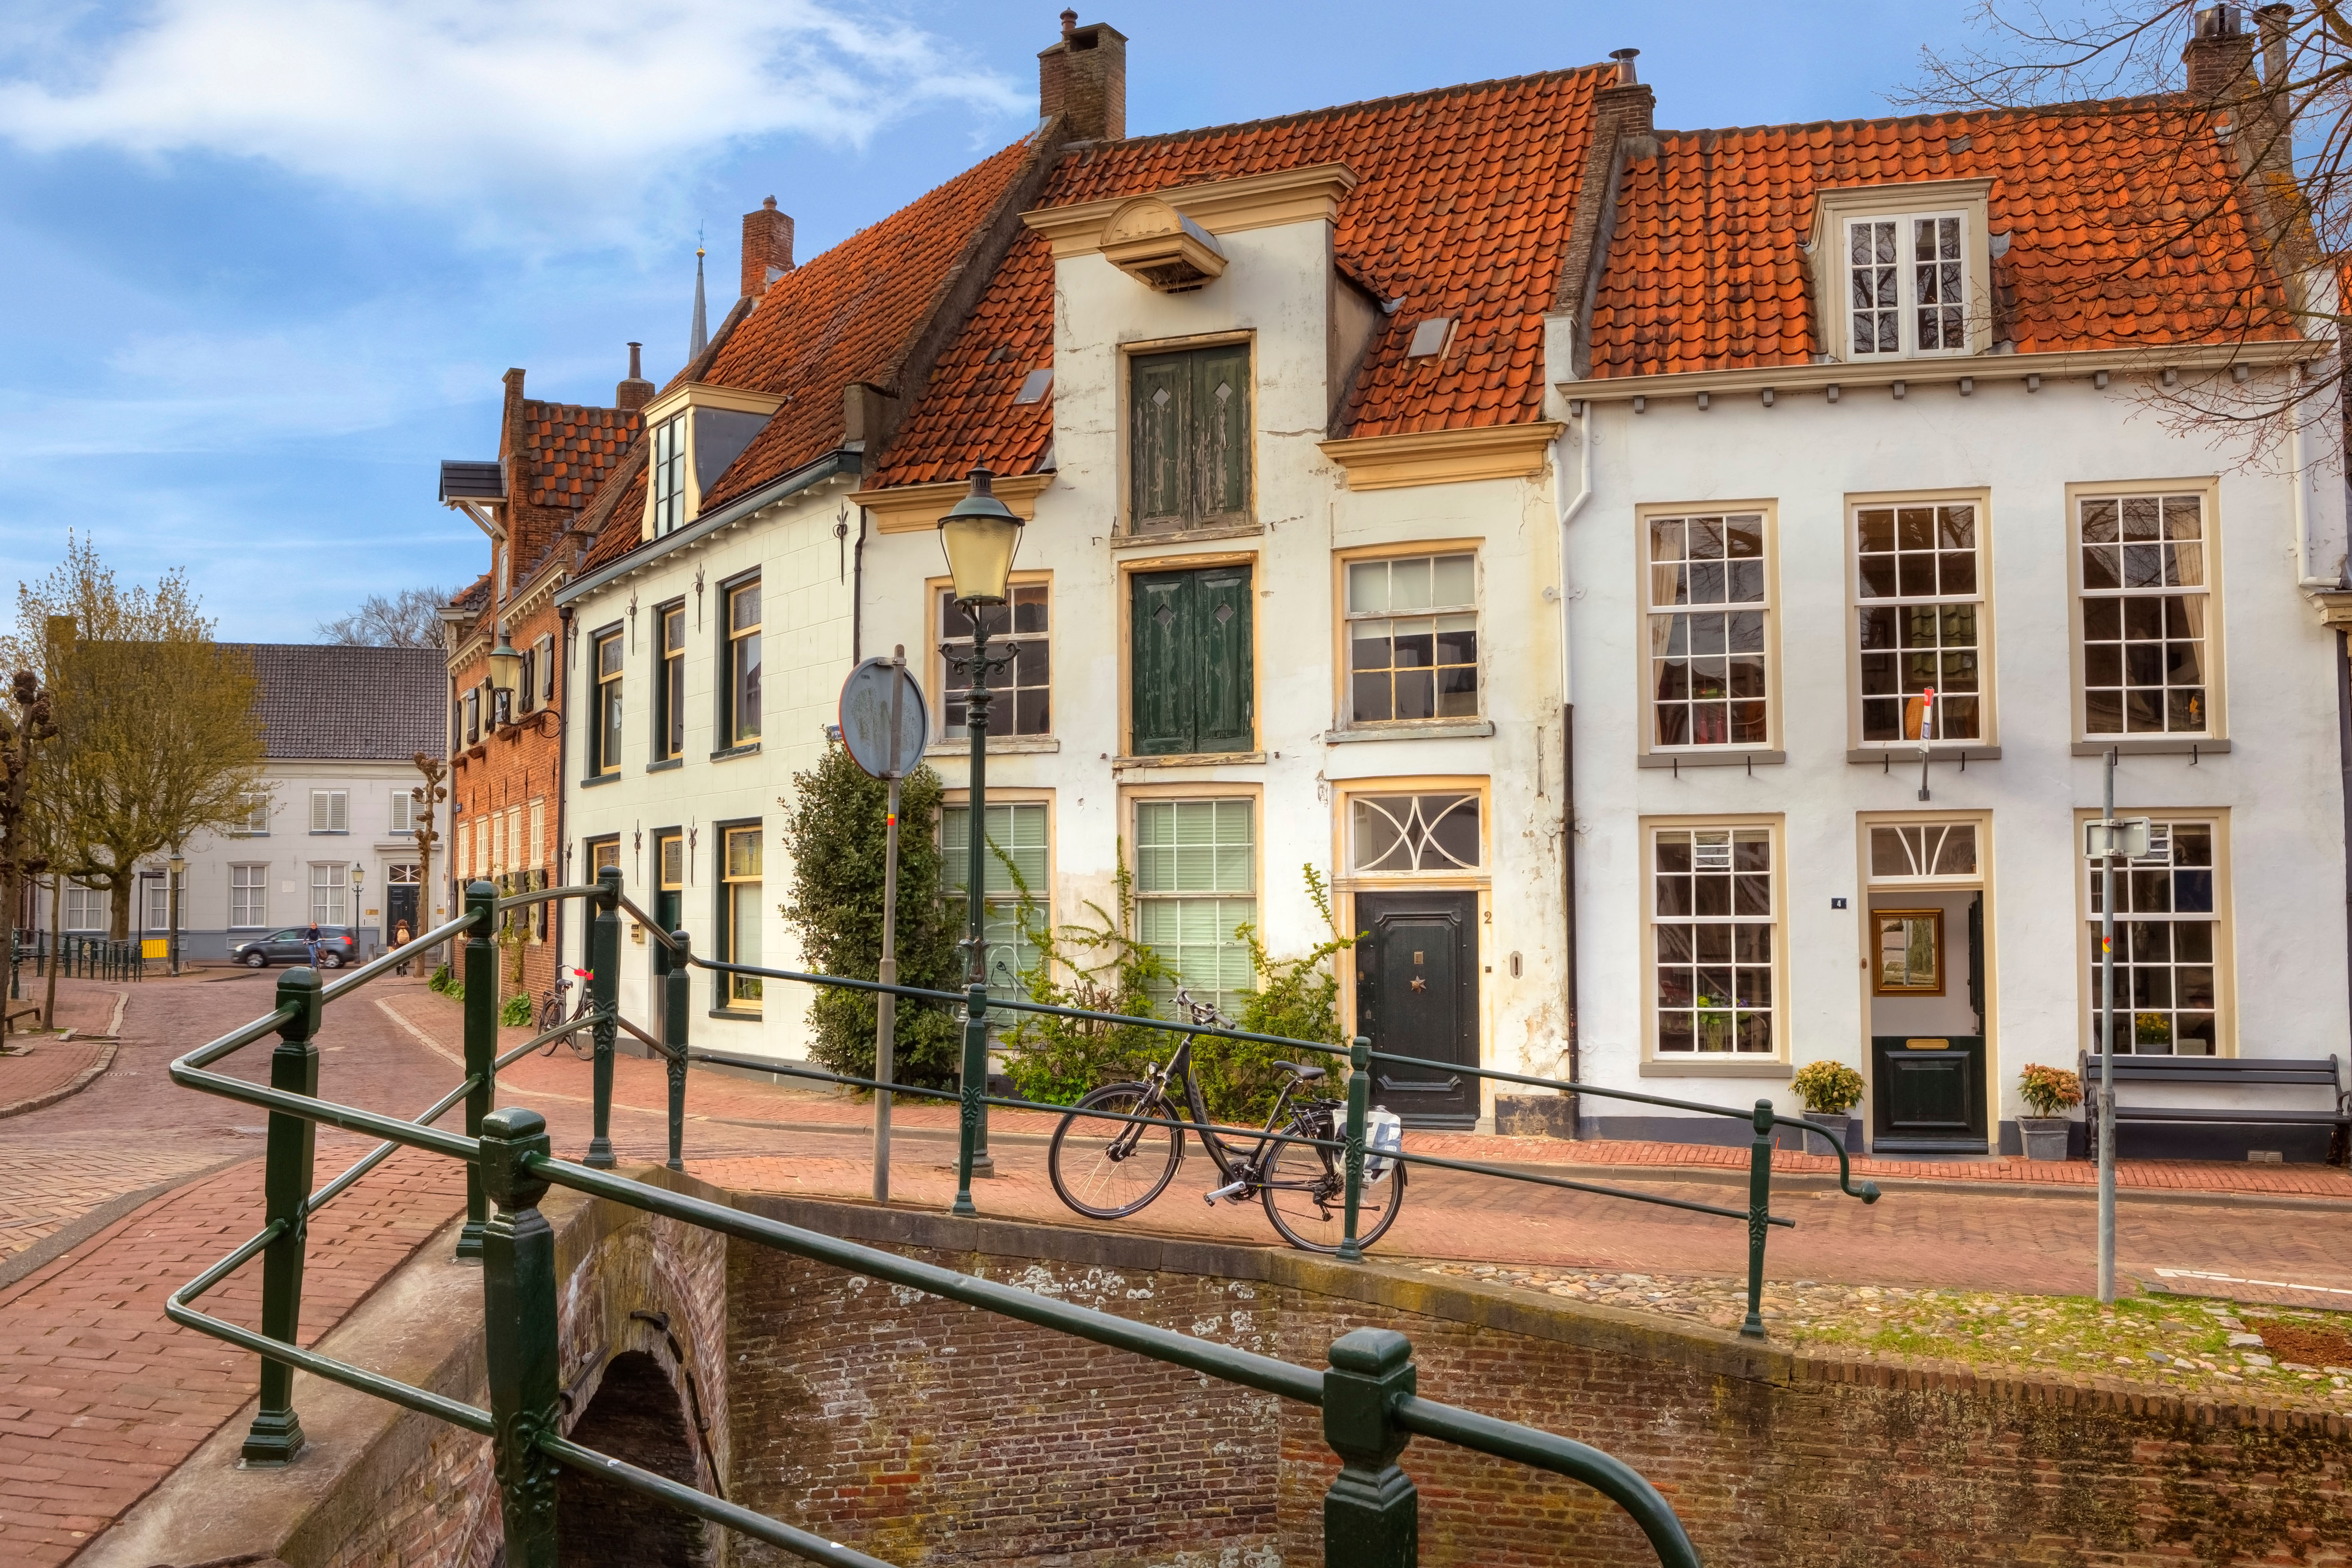 Die Häuser von Muurhuizen wurden unter Verwendung von Teilen der alten Stadtmauer gebaut